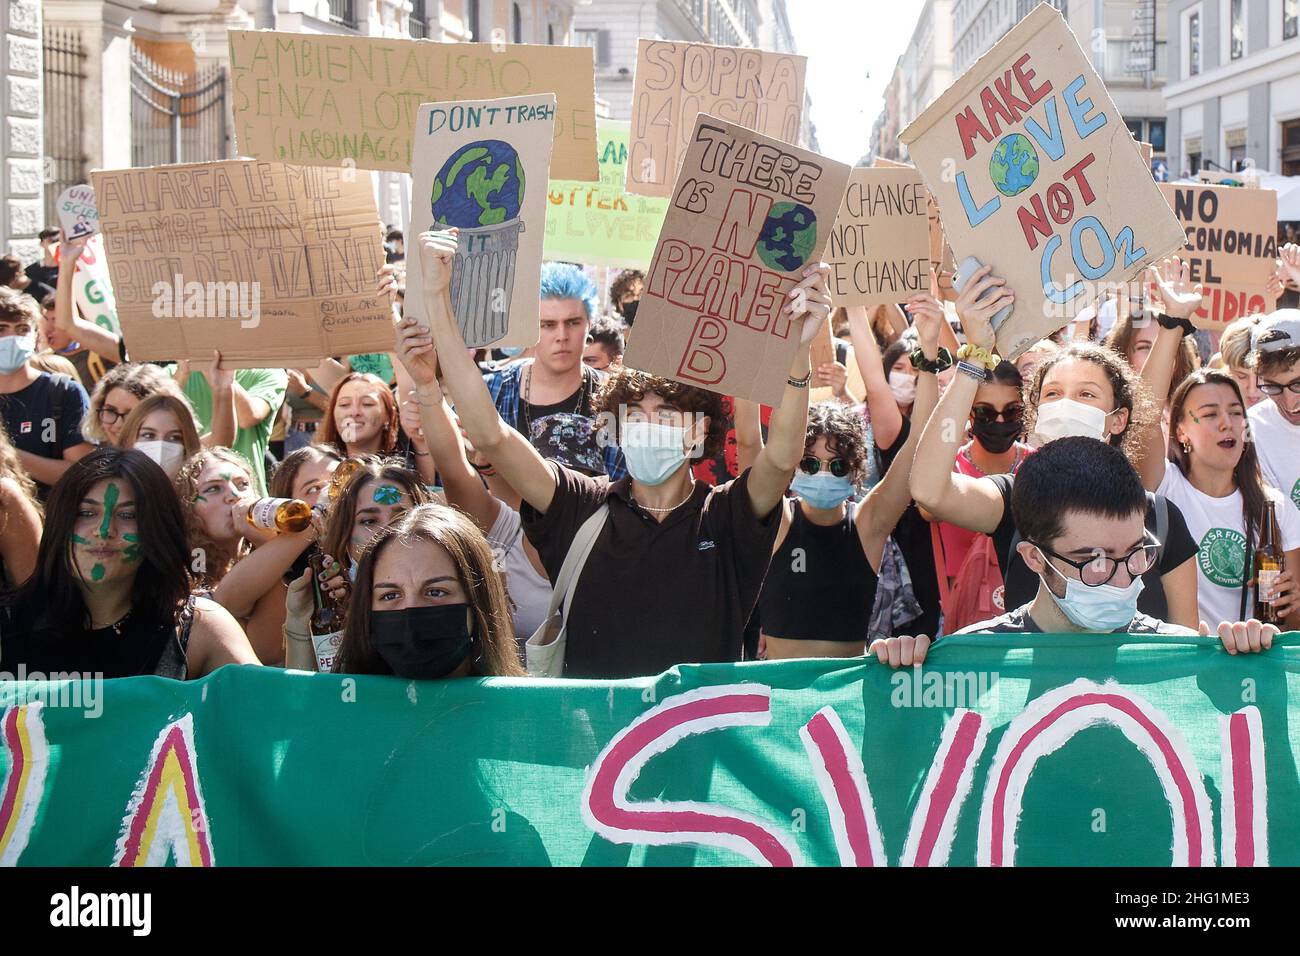 Roberto Monaldo / LaPresse 24-09-2021 Roma (Italia) Viernes por el futuro - Huelga climática mundial en la foto Un momento de la manifestación Foto de stock